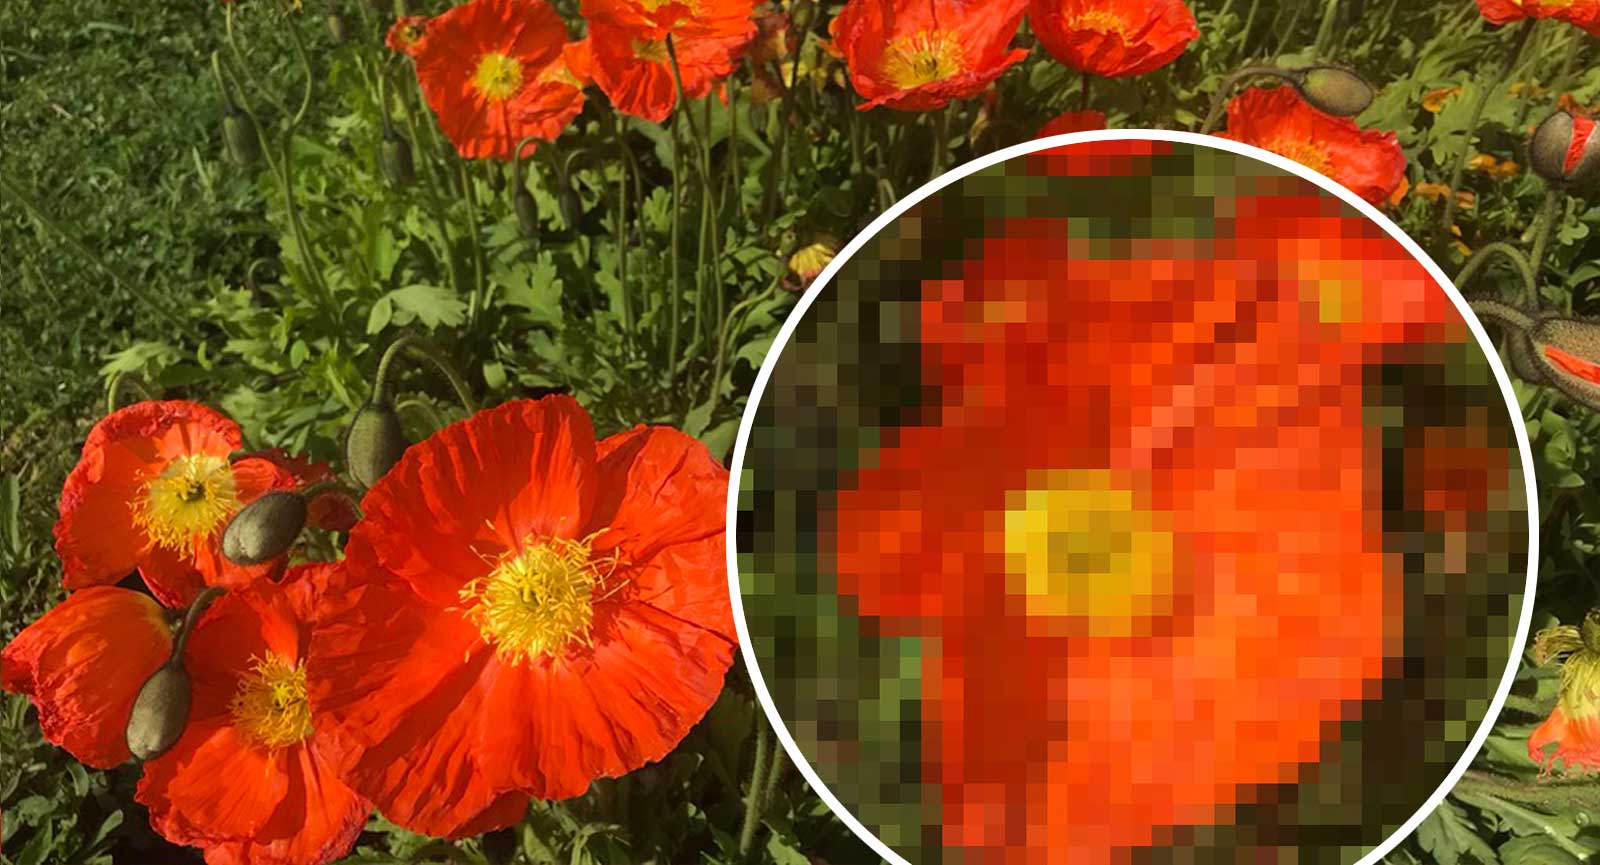 Darstellung eines Bildes mit verschiedenen Pixelgroessen